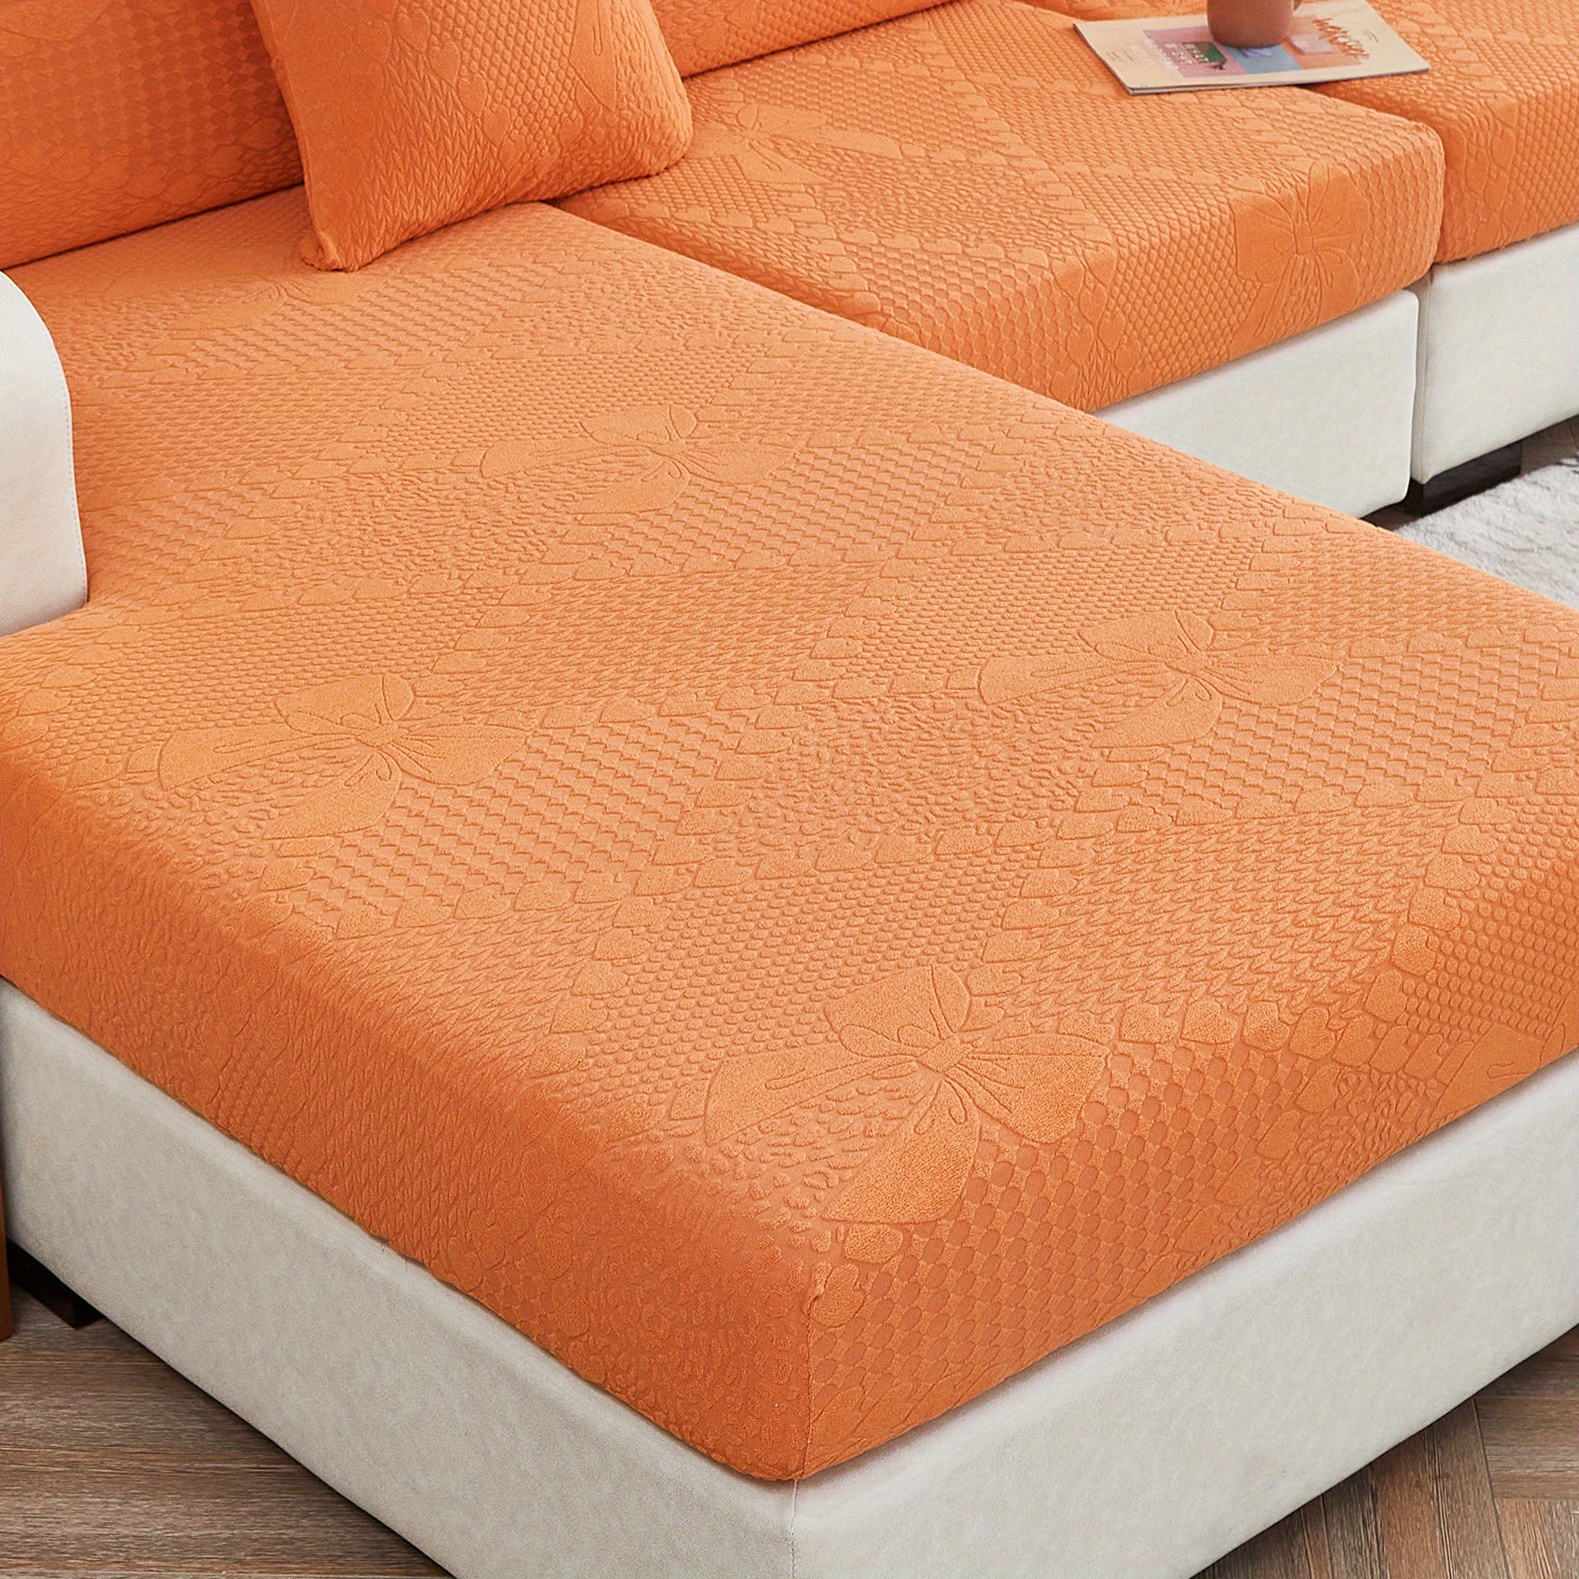 Polar Fleece Sofa Slipcover - Non-slip Sofa Cover With Bow Pattern